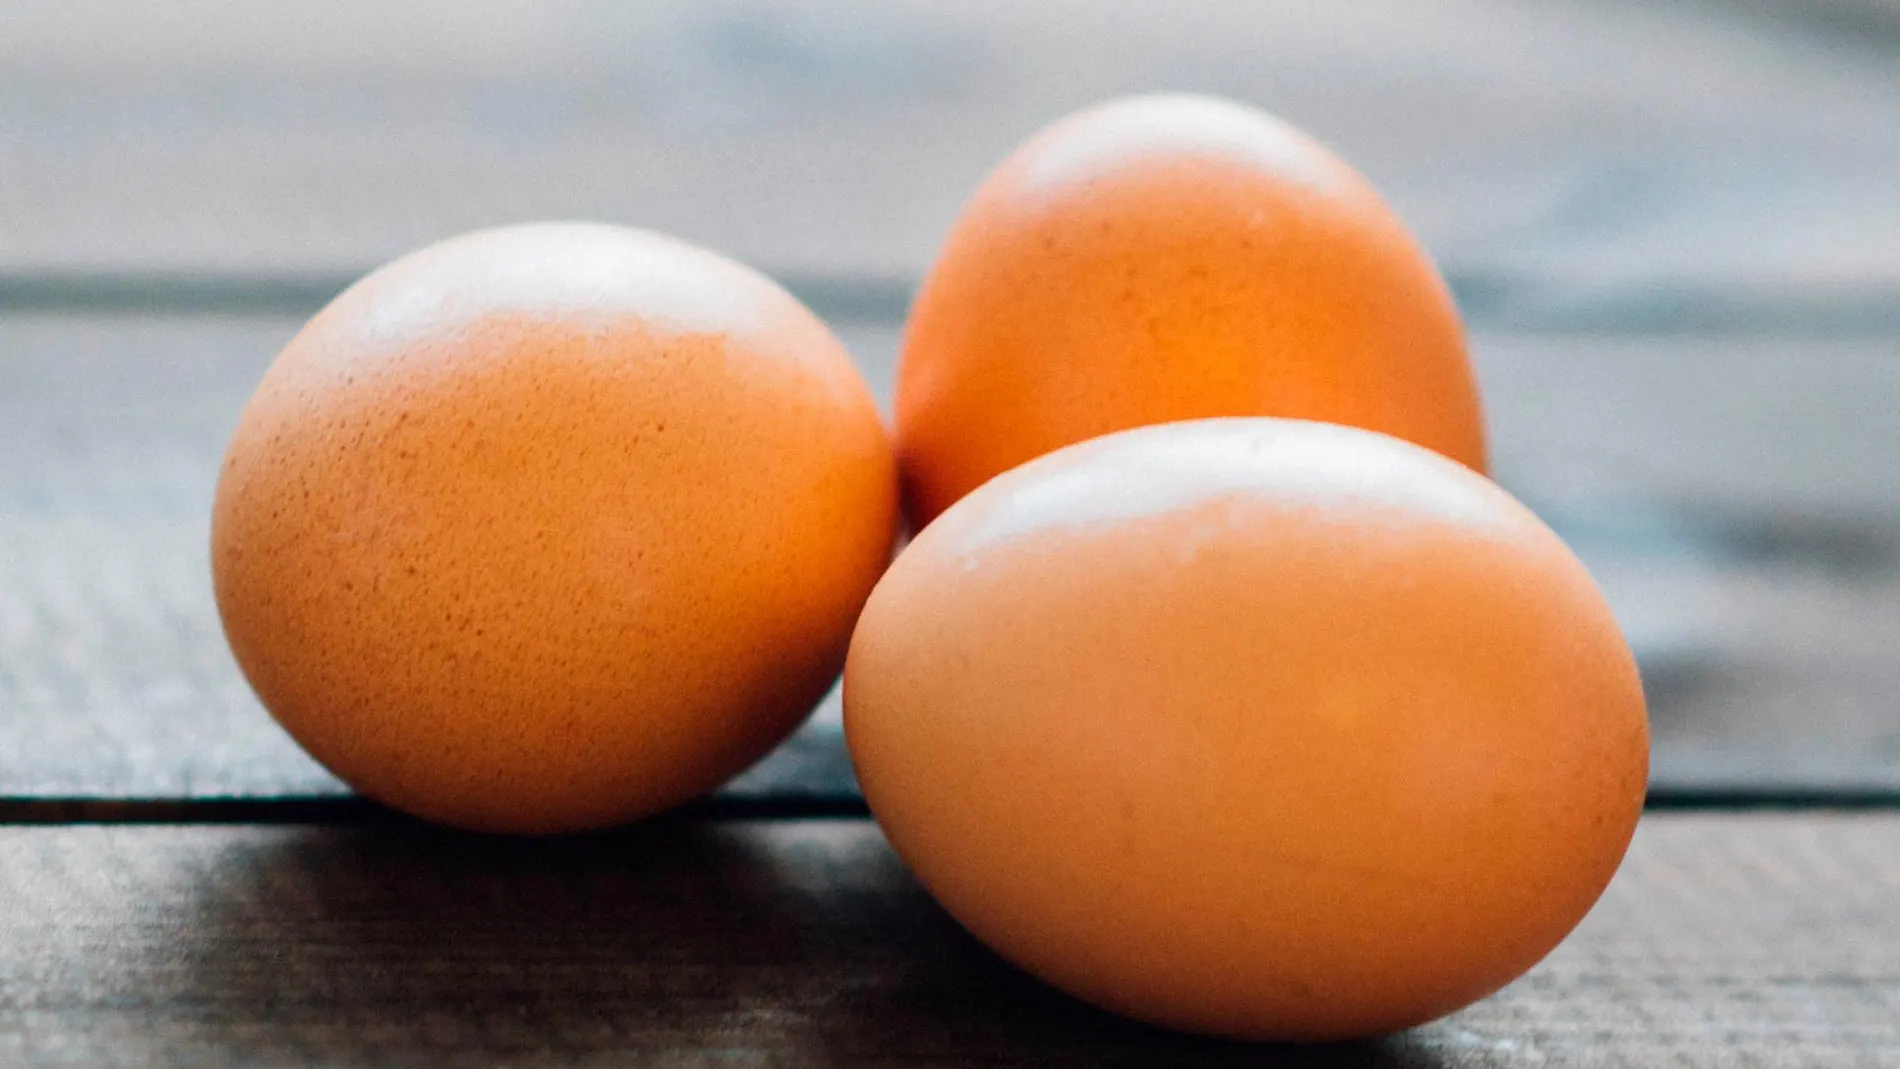 Huevos a menudo, ¿saludables o no?